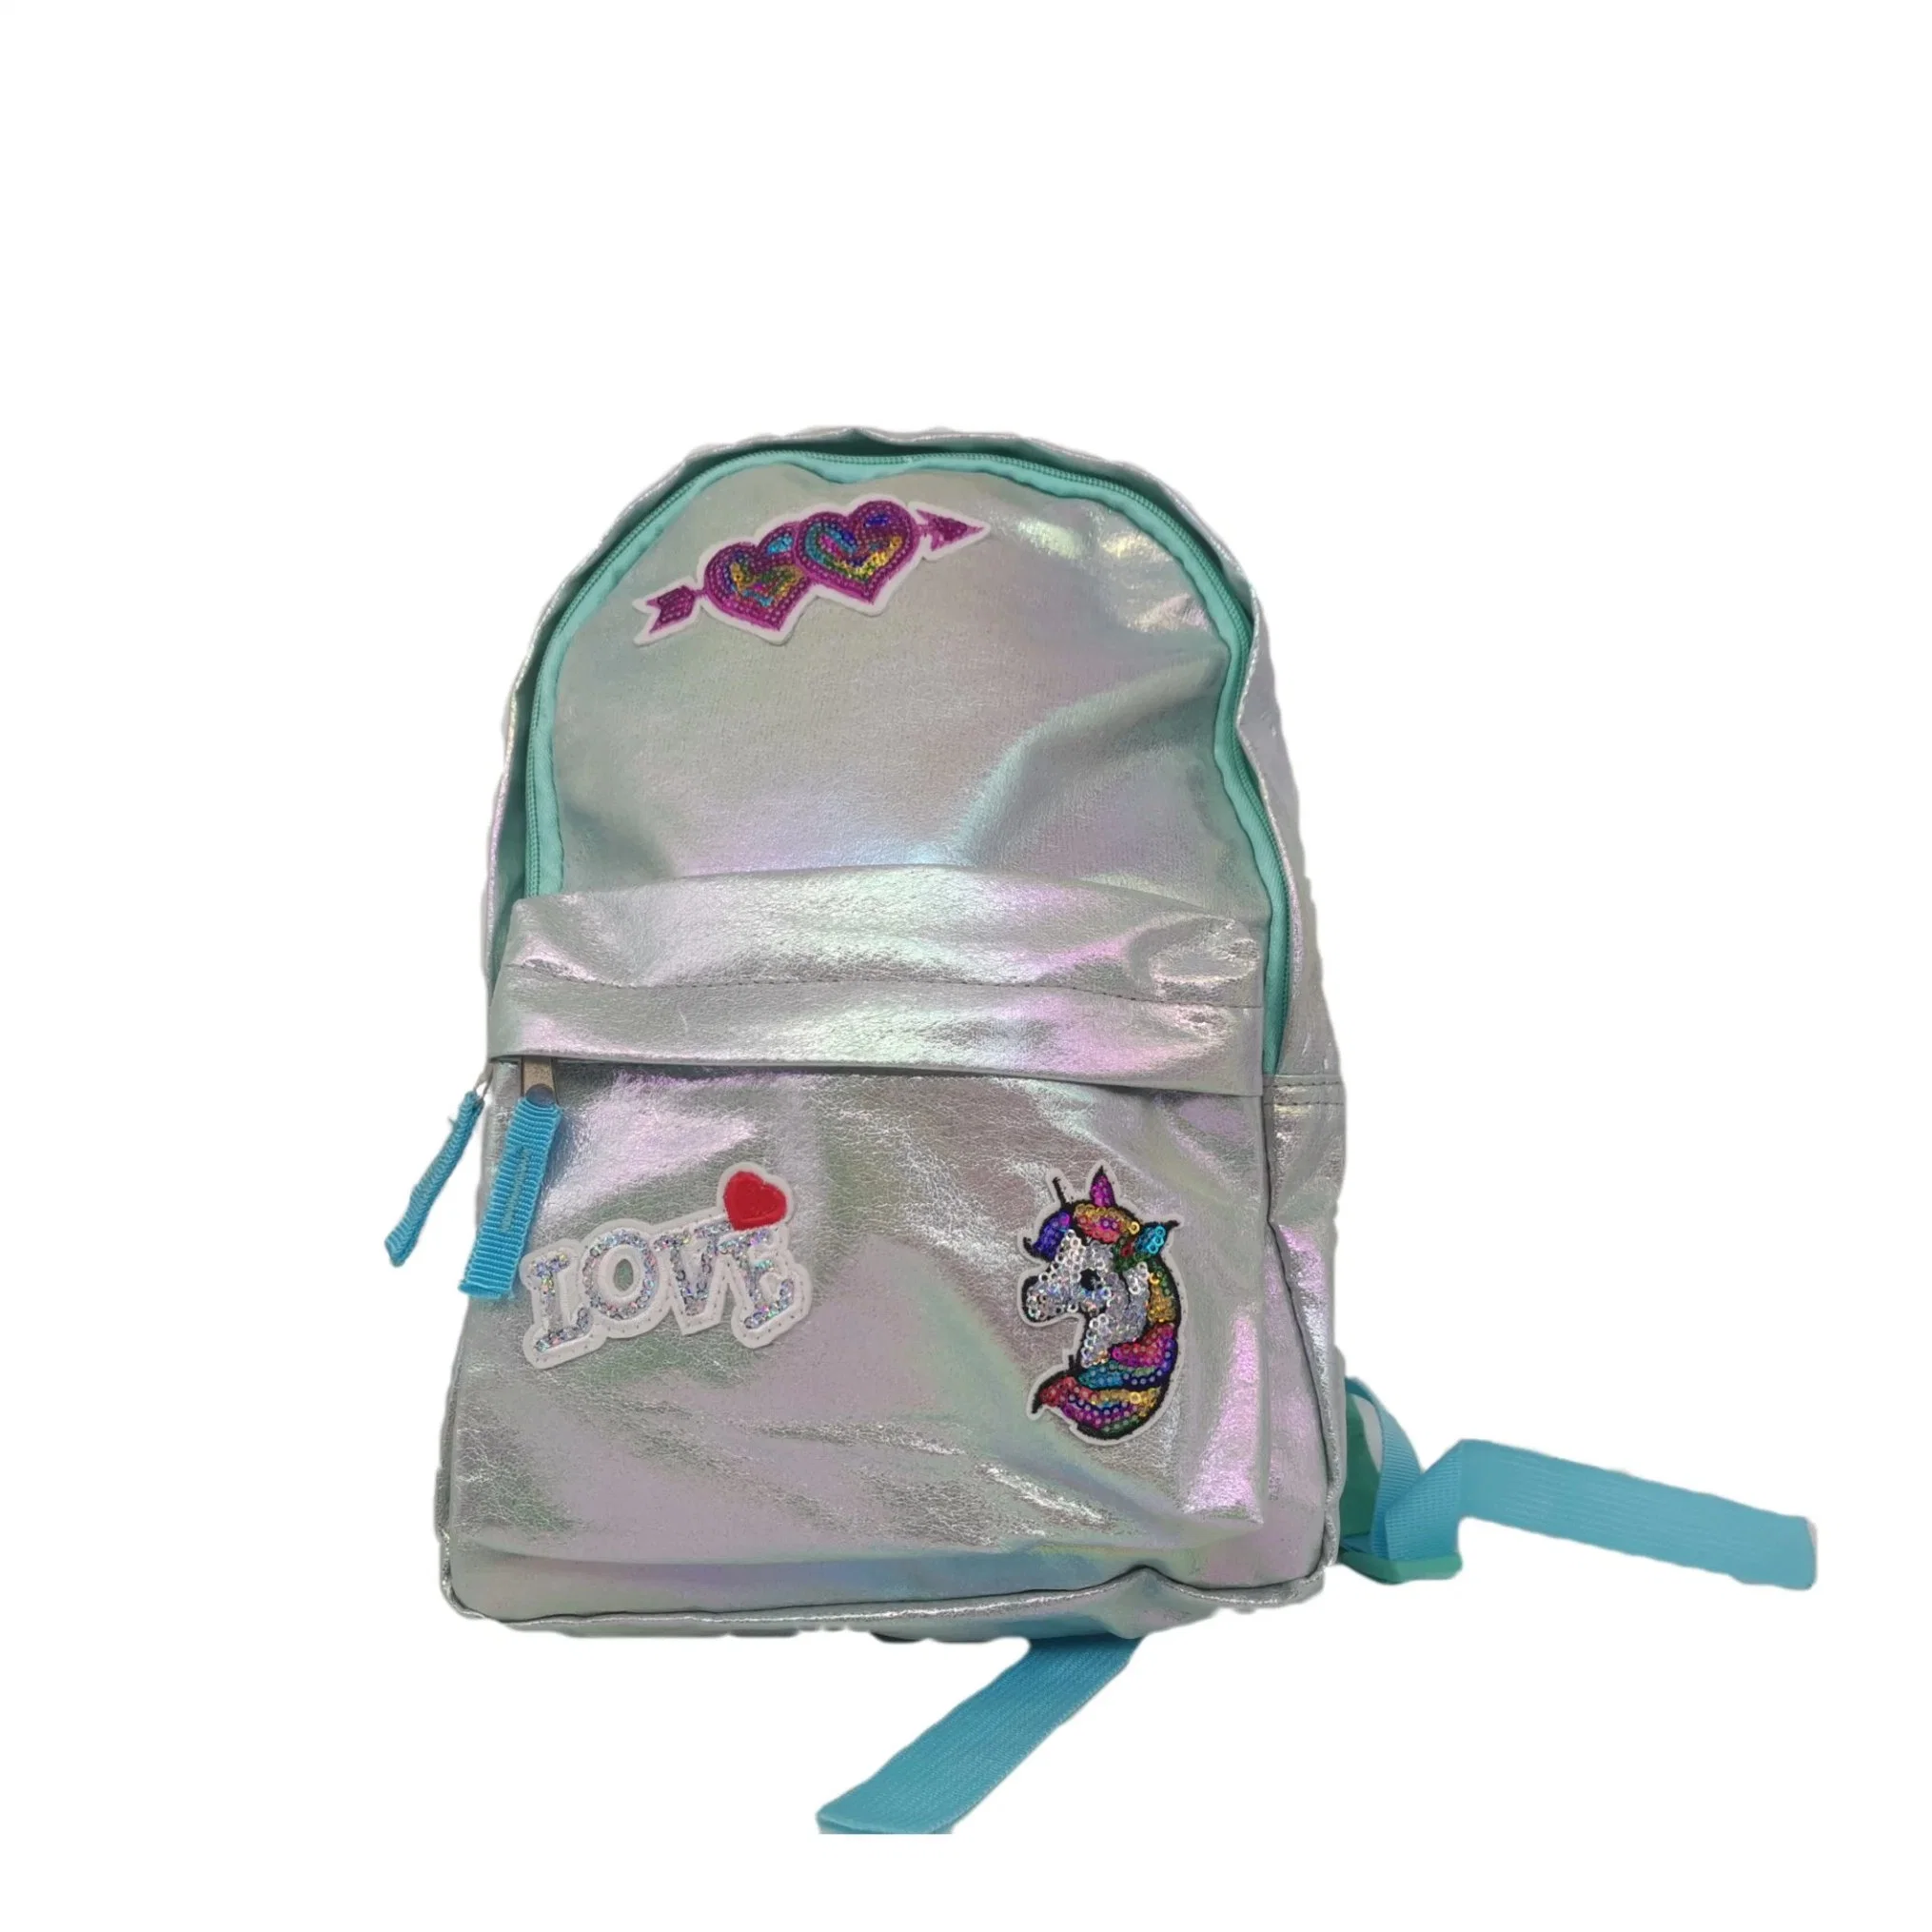 Design exclusivo cintilantes Unicorn Pink mochilas Lazer Sacos de escola para meninas